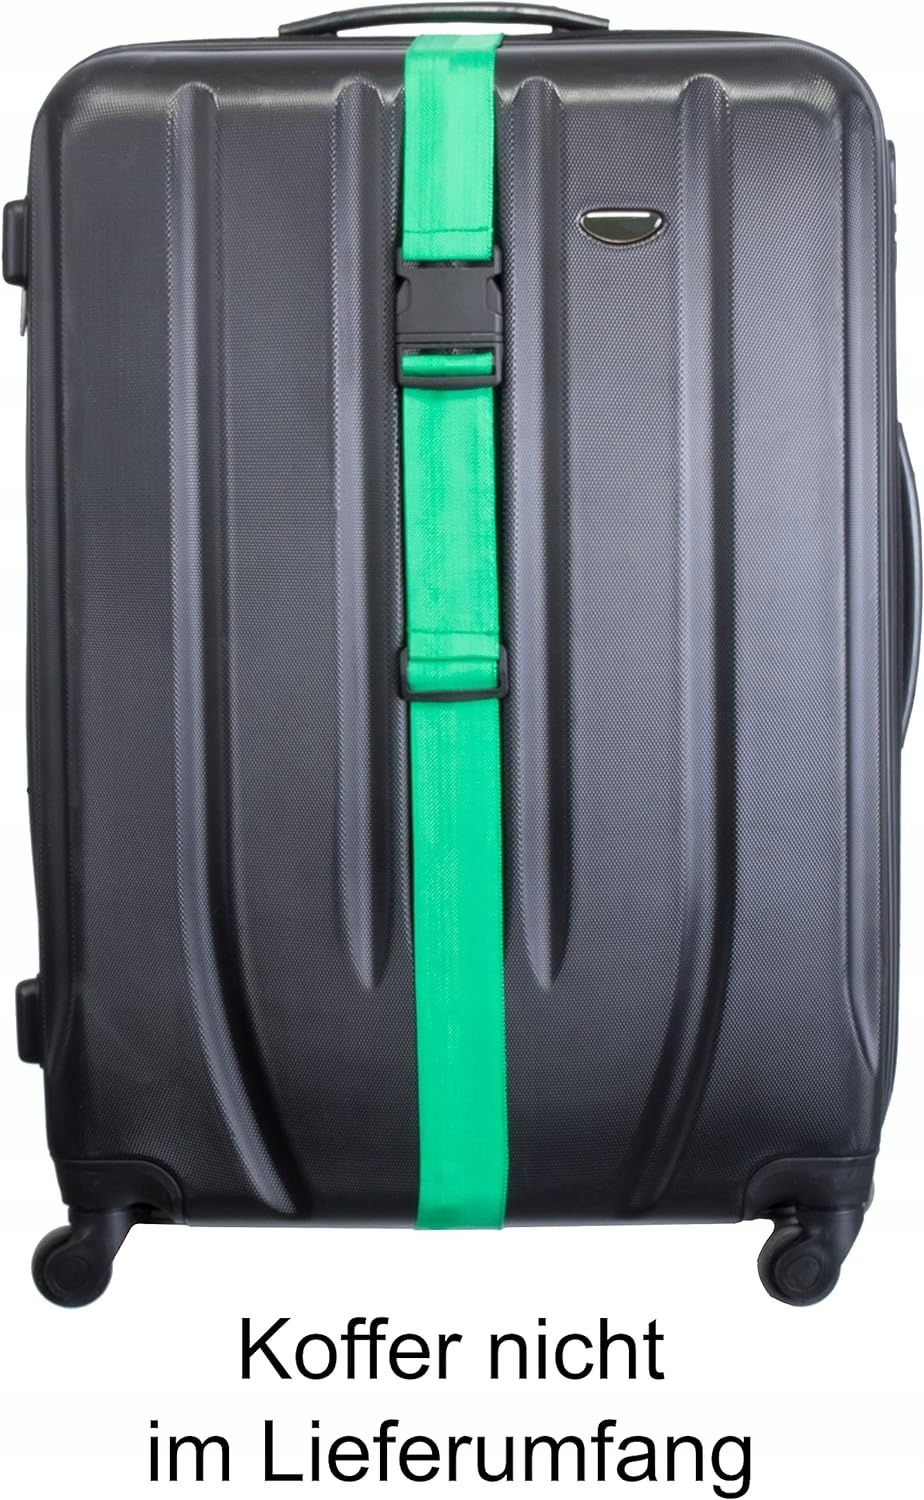 Pas Spinający Do Walizki Zabezpieczający Bagaż 5Cm 2M Zielony Bagażowy